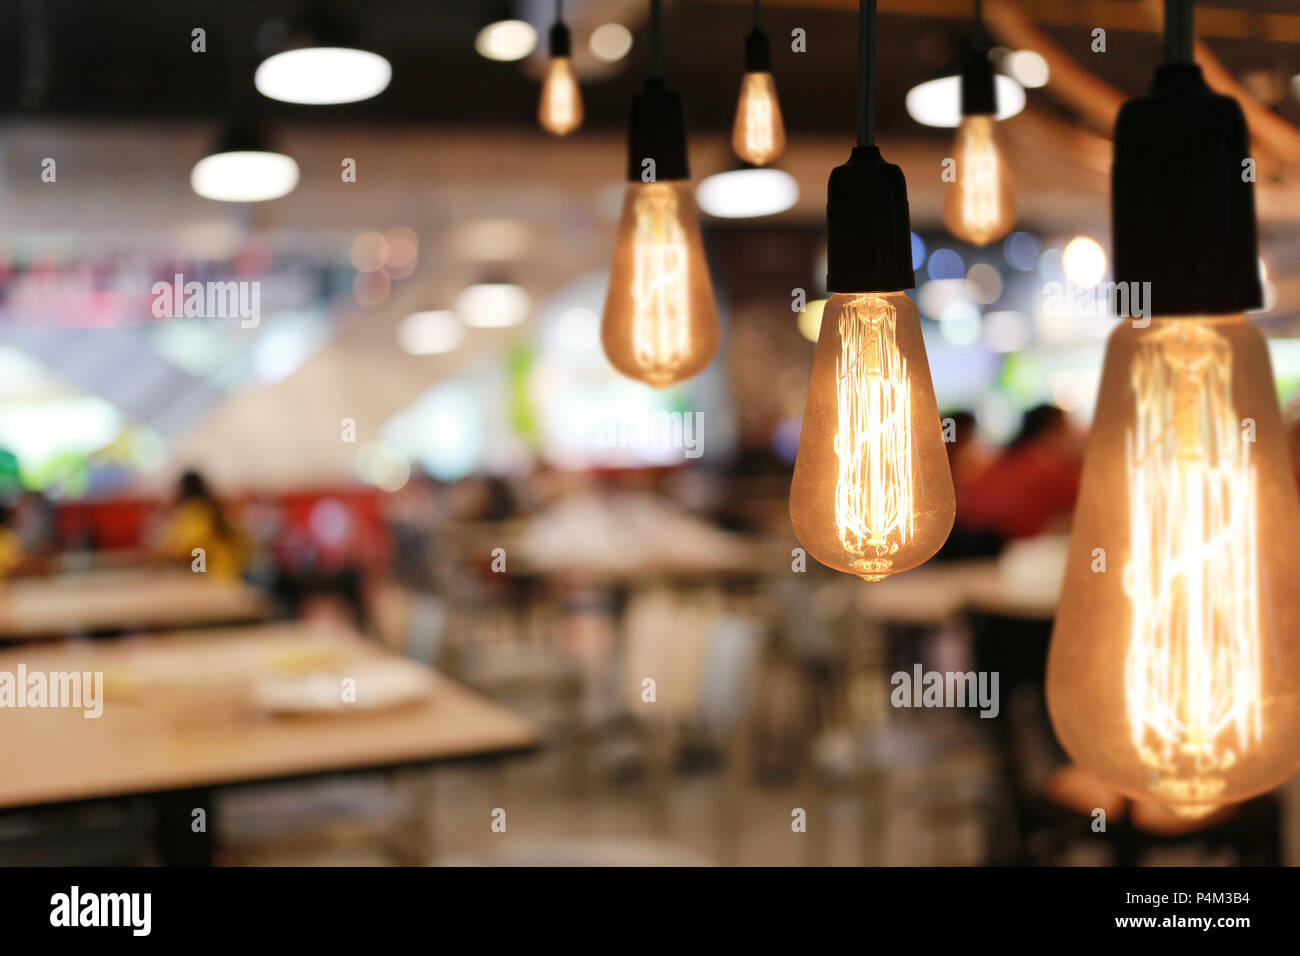 Lampade Vintage in un ristorante,concetto di interno con luci. Foto Stock